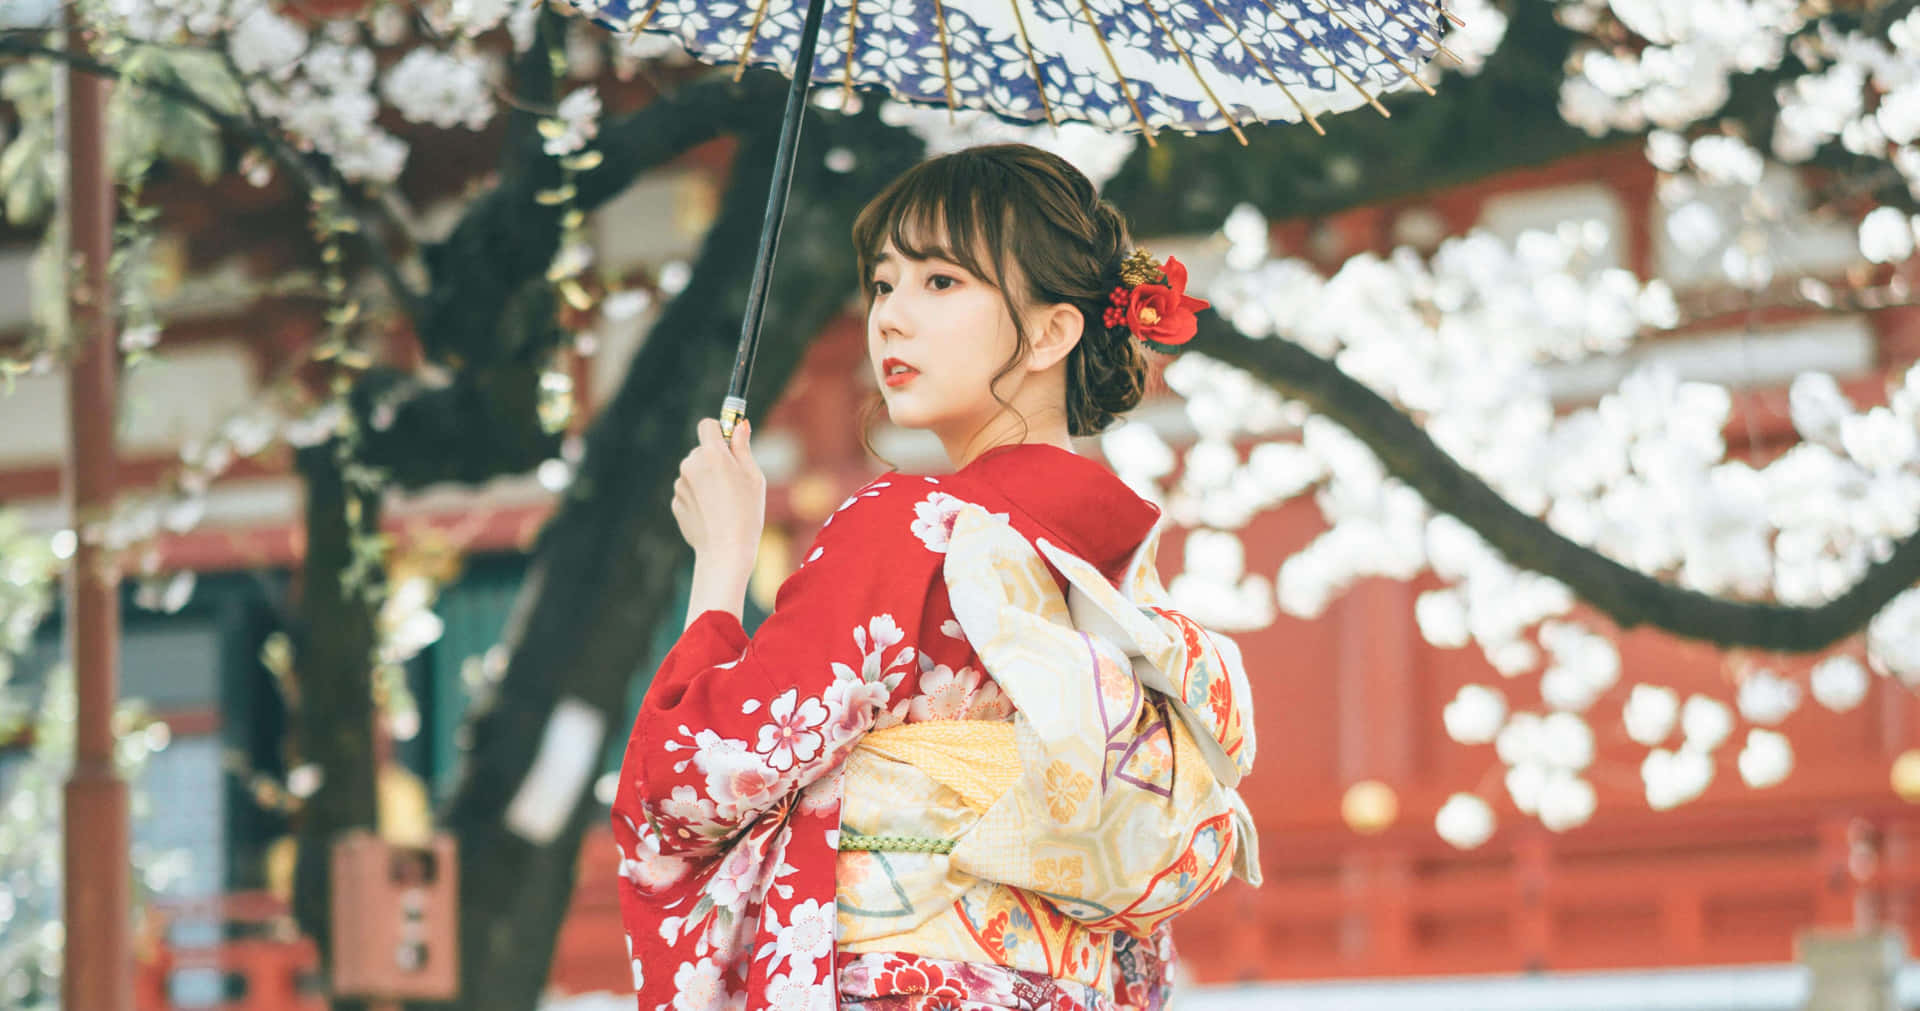 Enkvinna I En Kimono Håller I Ett Paraply.